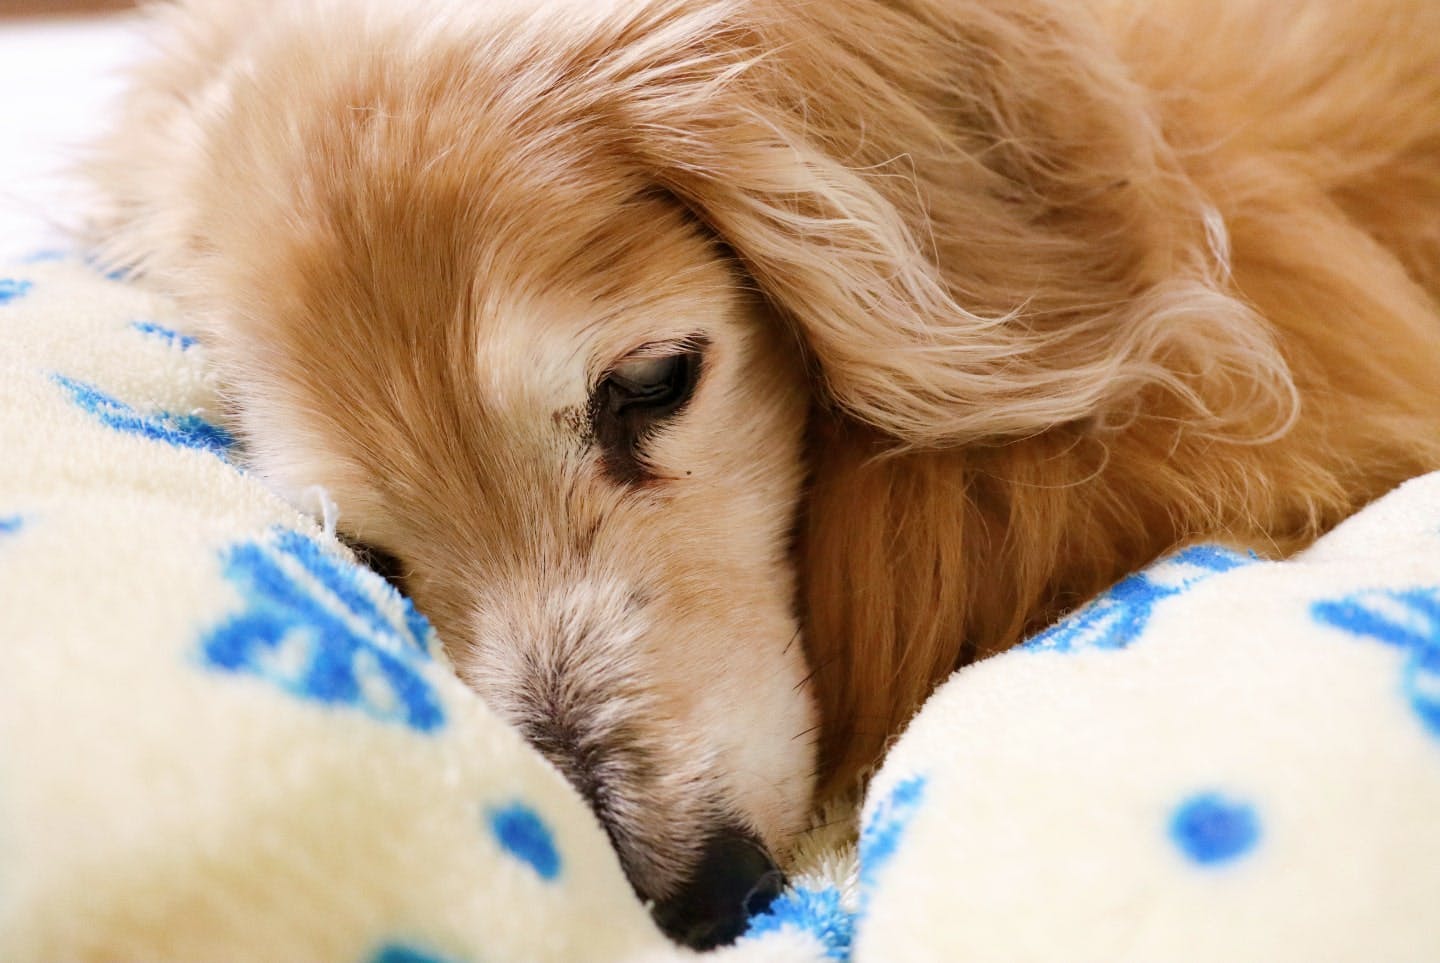 急な嘔吐と下痢。胃腸炎になった犬の症状や治療方法を解説